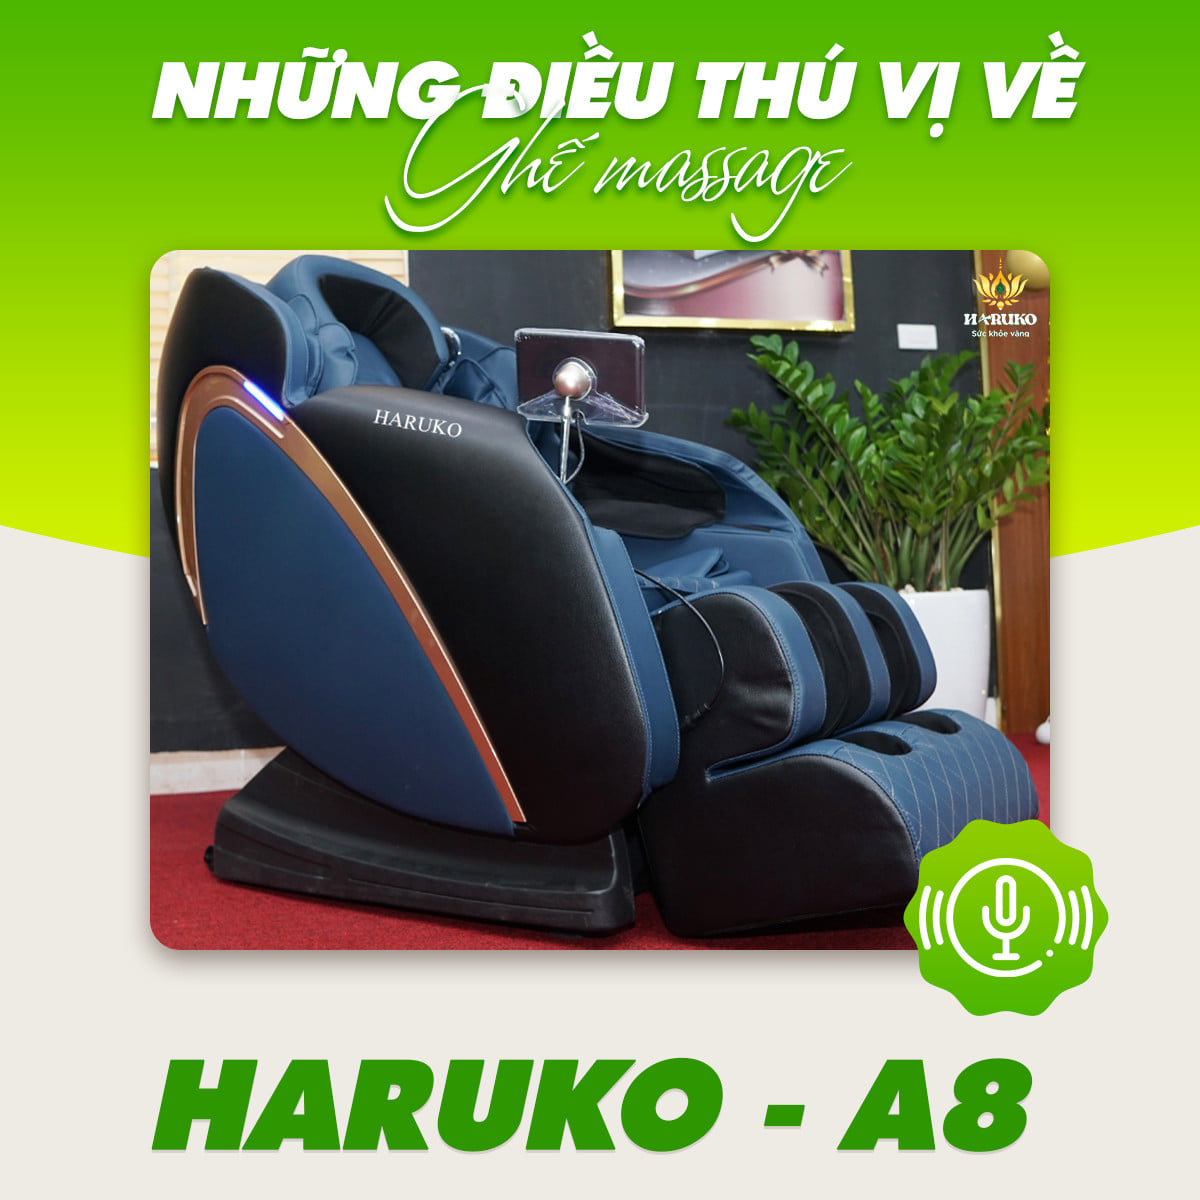 Ghế massage Haruko-A8 với gam màu xanh ngọc toát lên vẻ sang trọng khi bạn ngắm nhìn